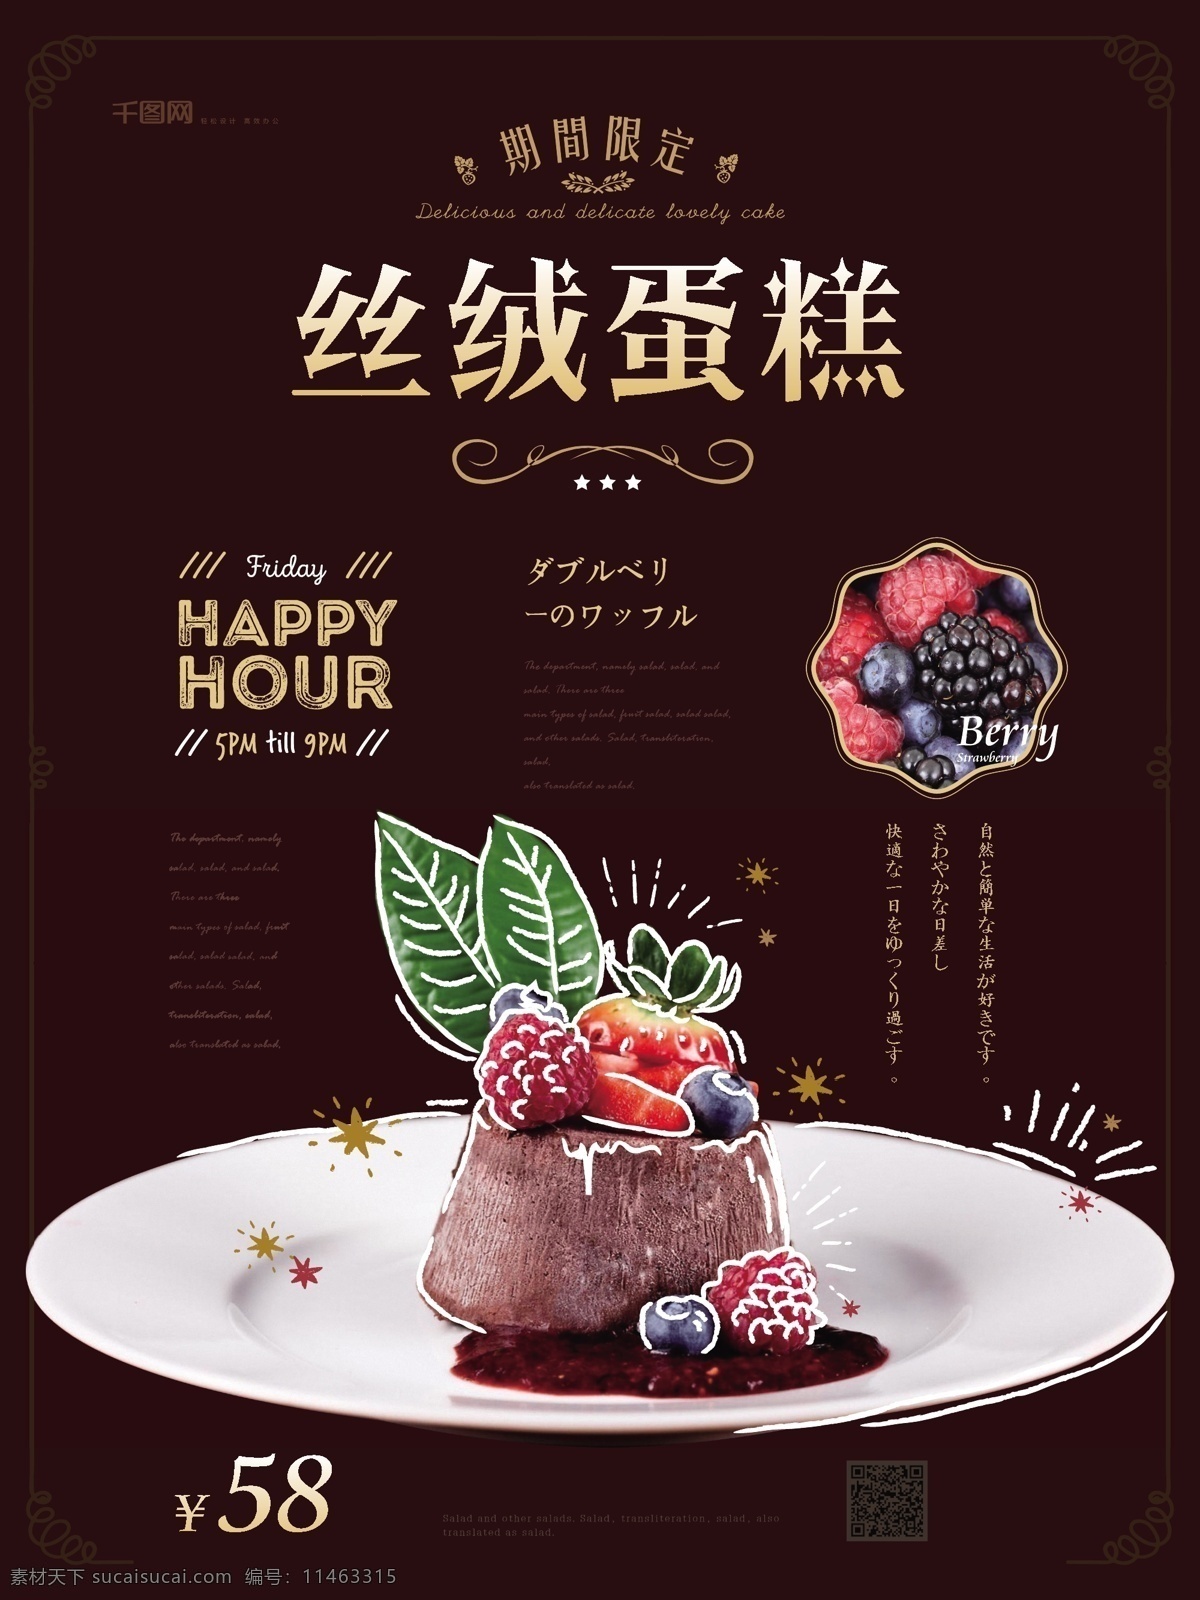 简约 手绘 风 丝绒 蛋糕 甜点 美食 海报 健康 宣传 简约手绘风 丝绒蛋糕 甜品店